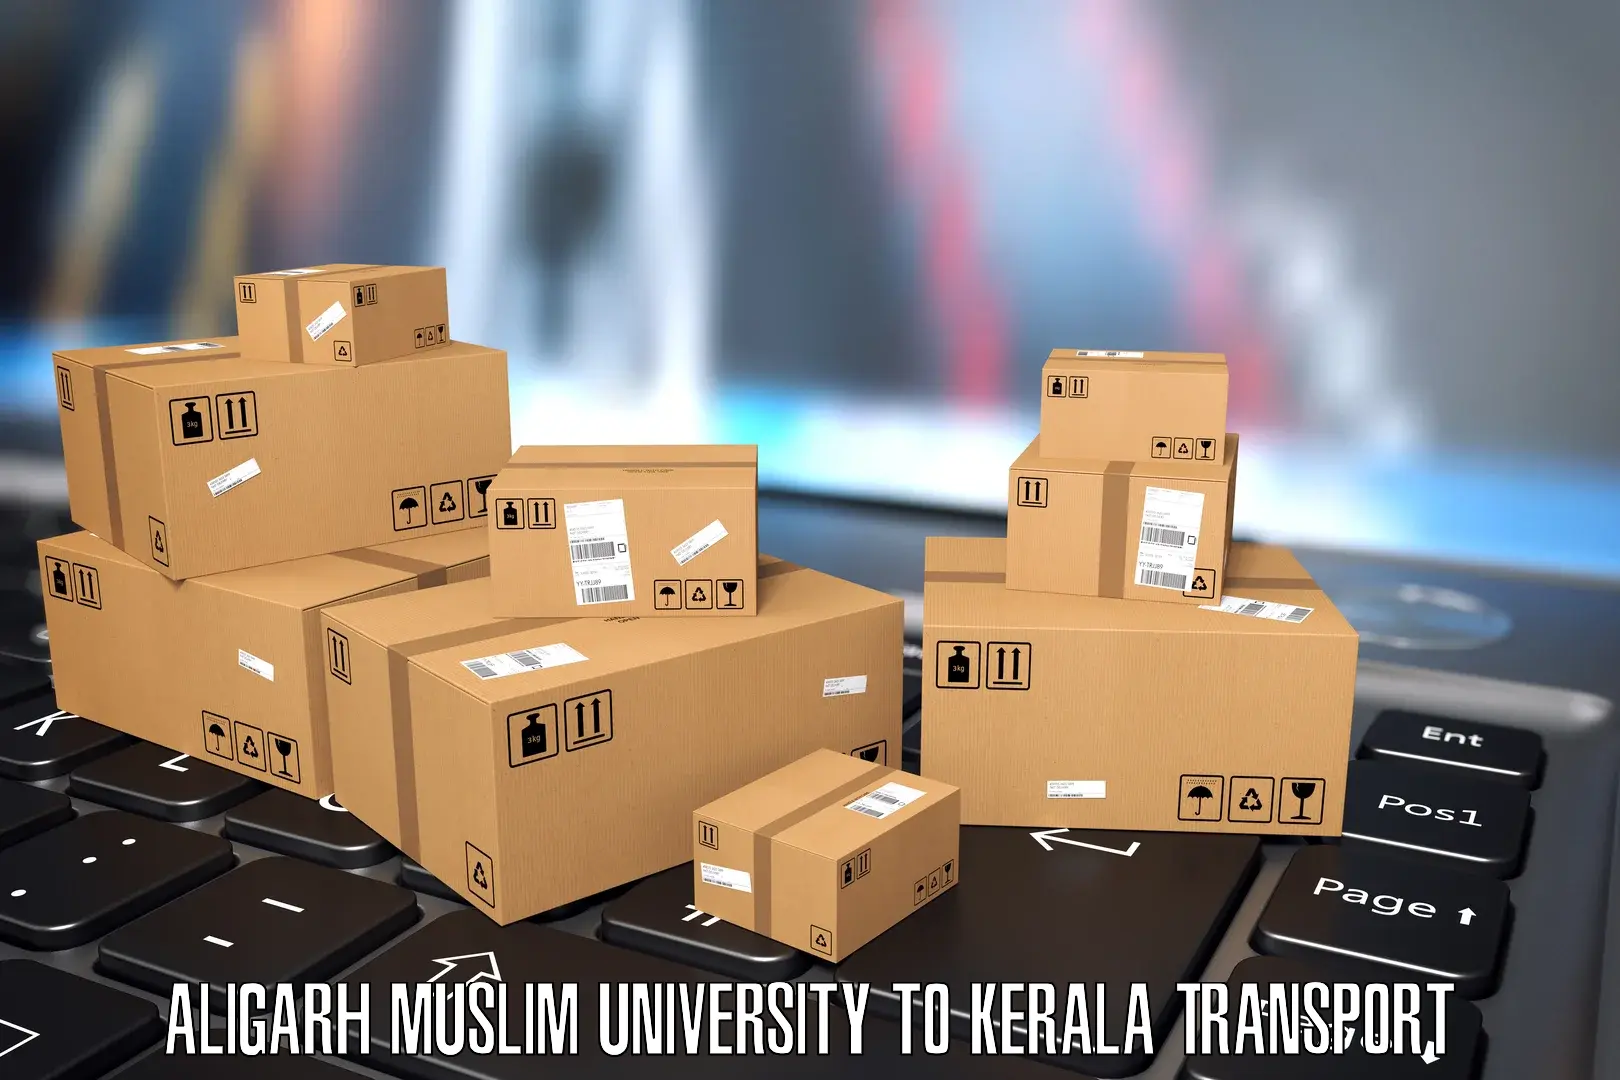 Vehicle parcel service Aligarh Muslim University to Thiruvananthapuram